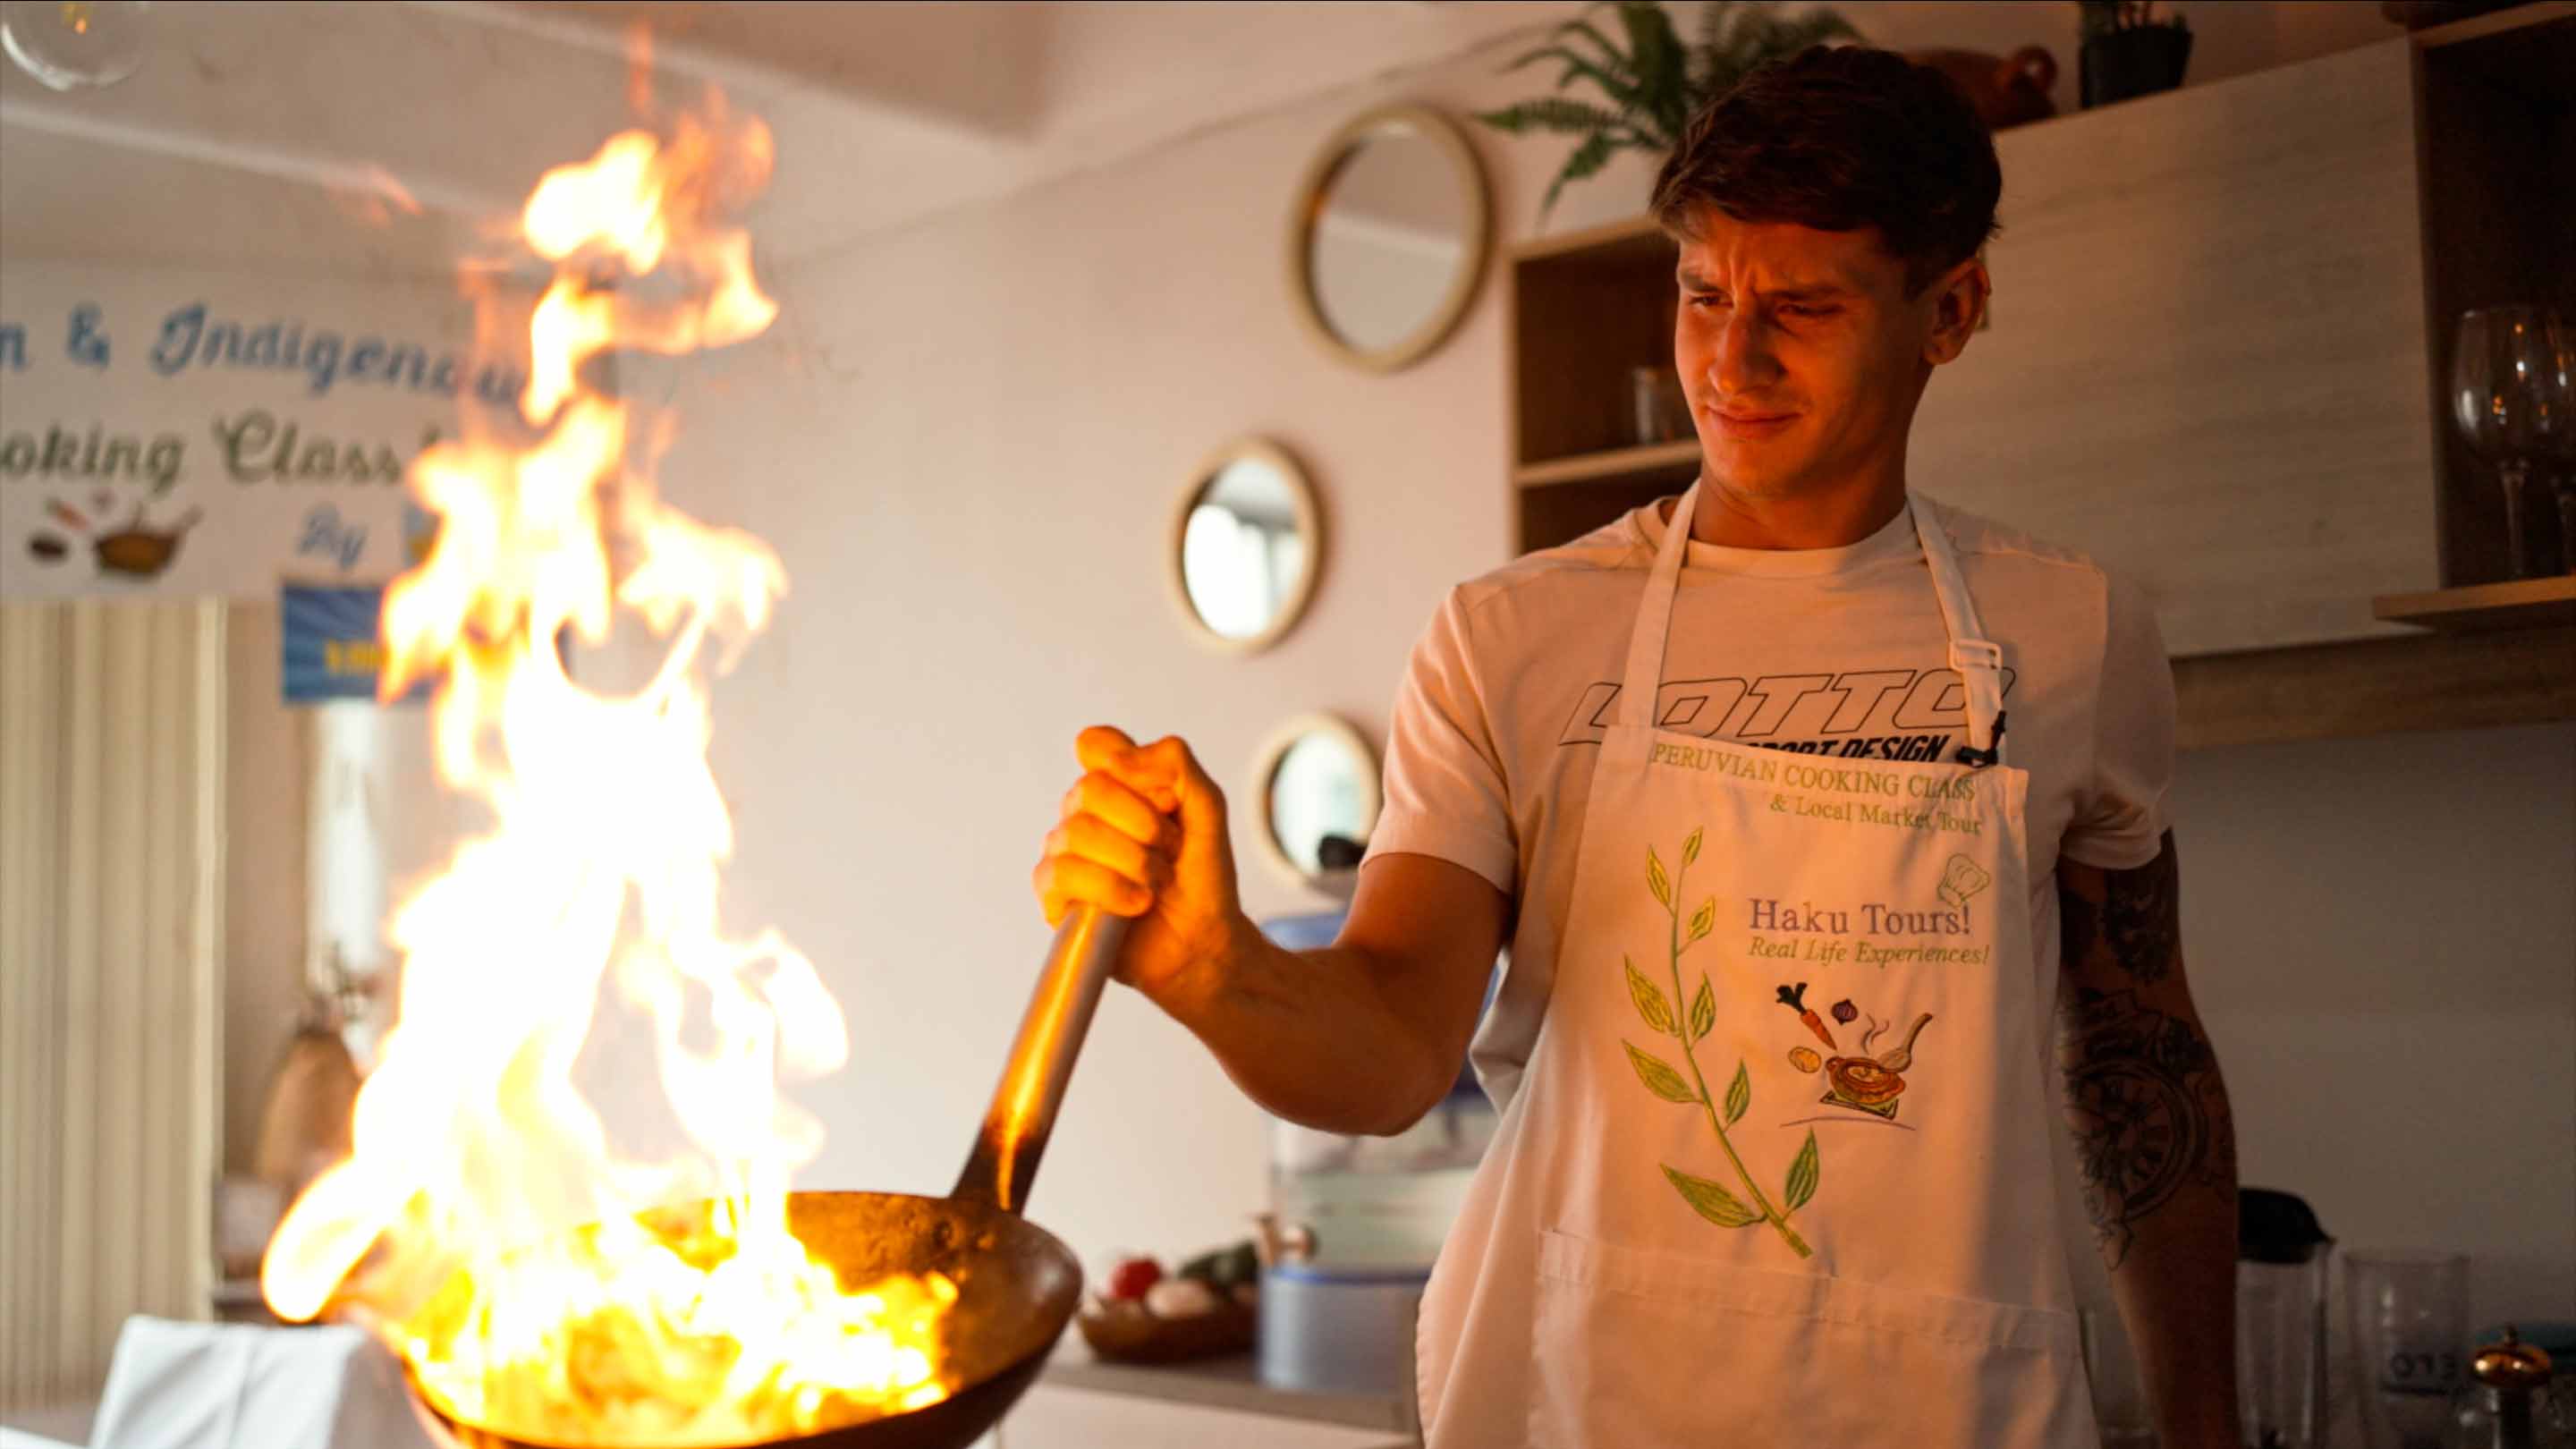 <a href='https://www.atptour.com/en/players/camilo-ugo-carabelli/u182/overview'>Camilo Ugo Carabelli</a> prepares the lomo saltado at a cooking class in Lima, Peru.